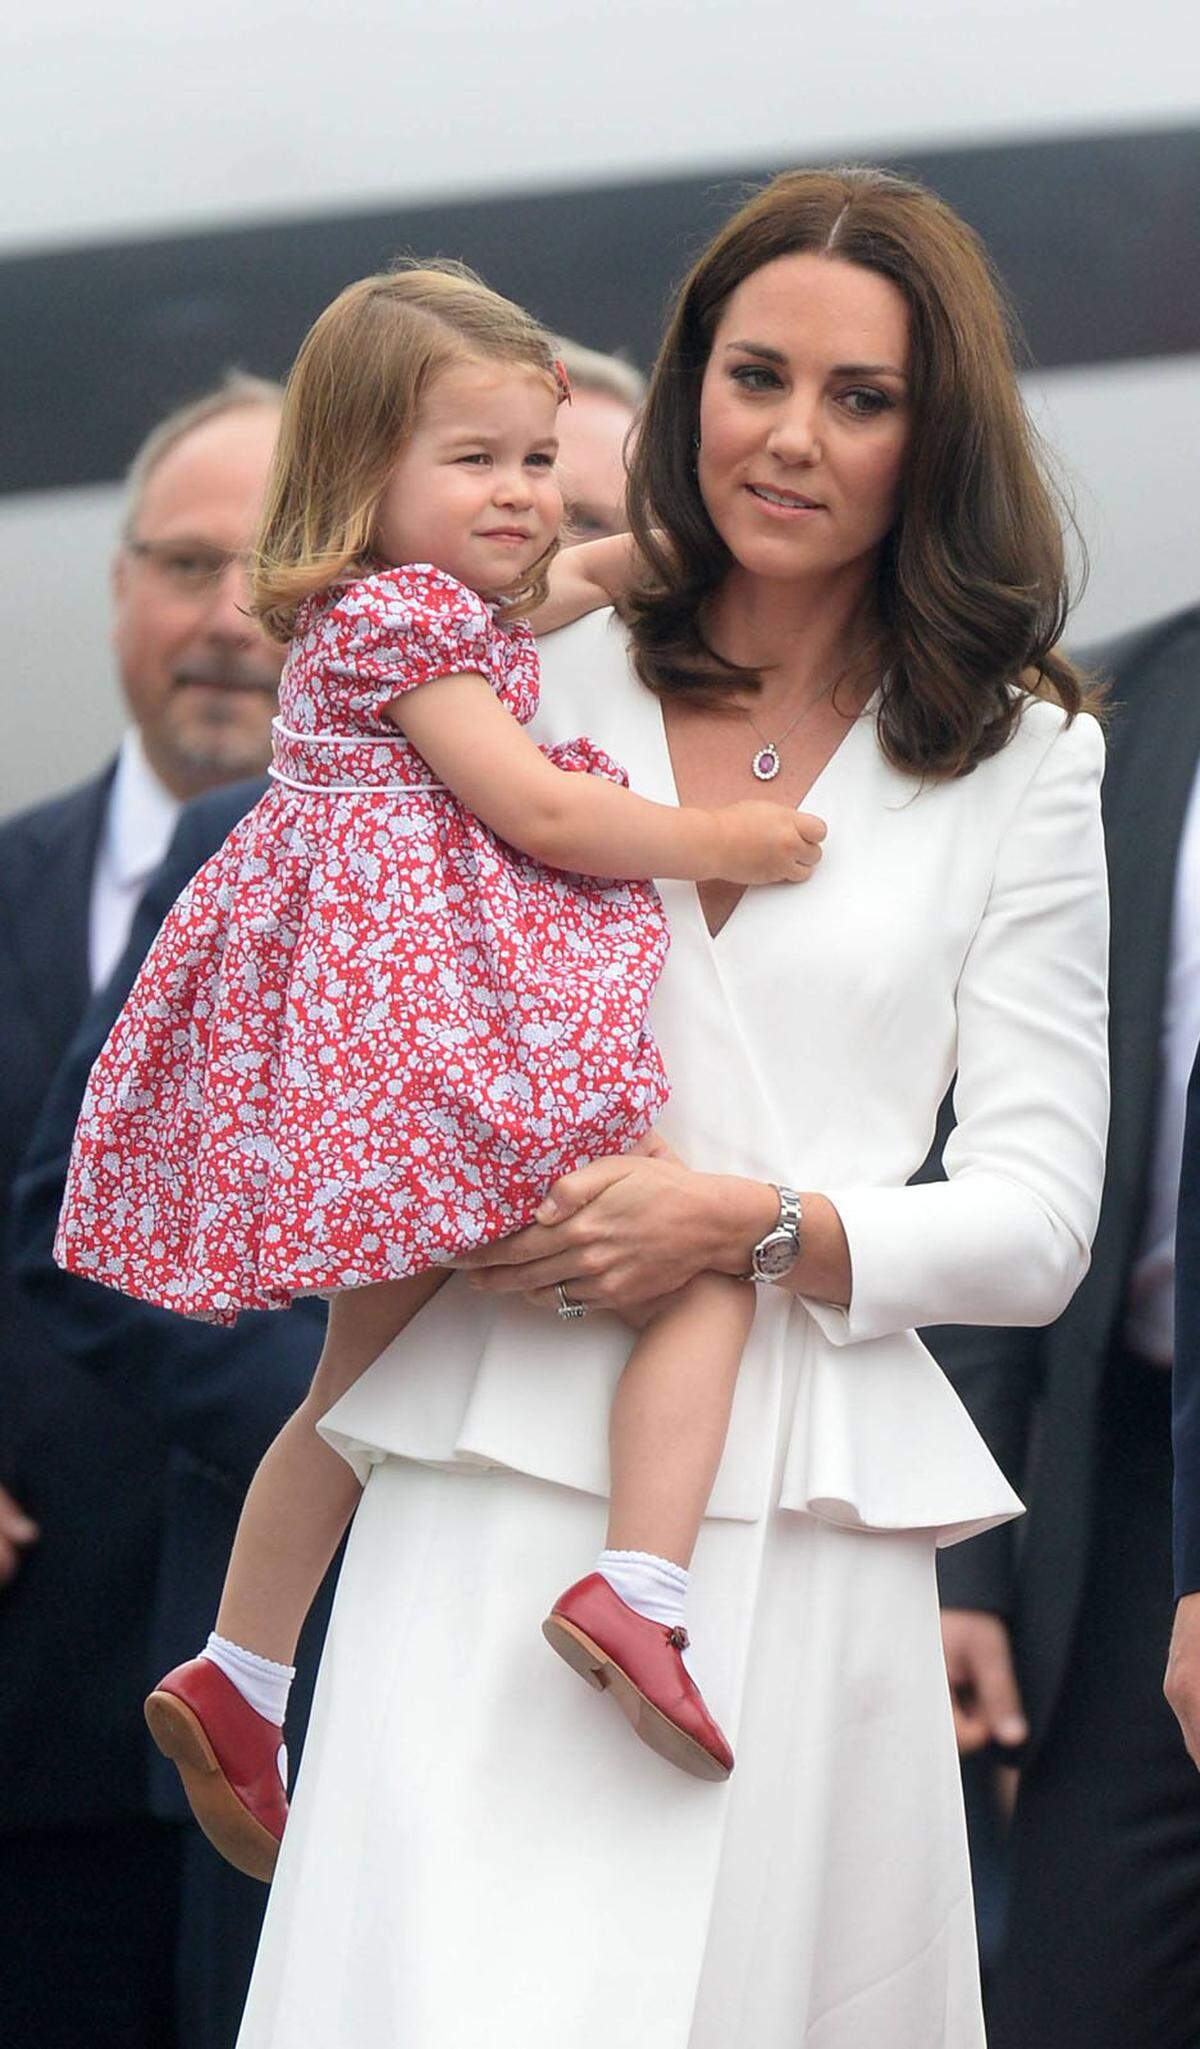 Diplomatisch im Doppelpack: In Rot und Weiß - den Landesfarben Polens - machte das Mutter-Tochter-Duo einen guten ersten Eindruck. Herzogin Kate kombinierte zu ihrem weißen Outfit von Alexander McQueen roten Schmuck.